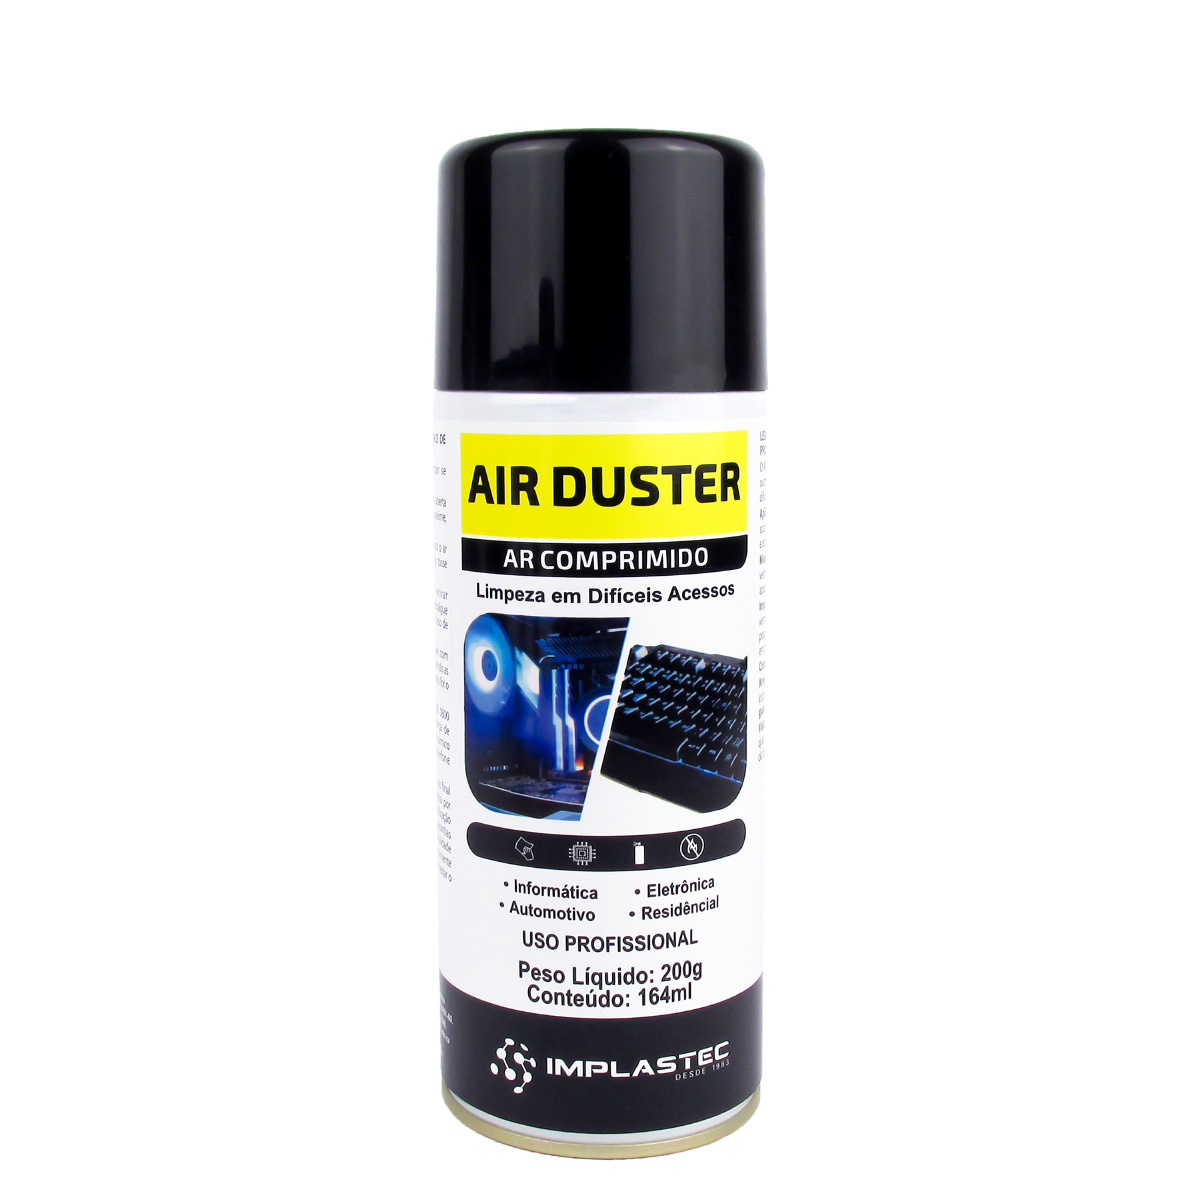 Air Duster - Removedor de Pó - Ar Comprimido - 164ml - Implastec